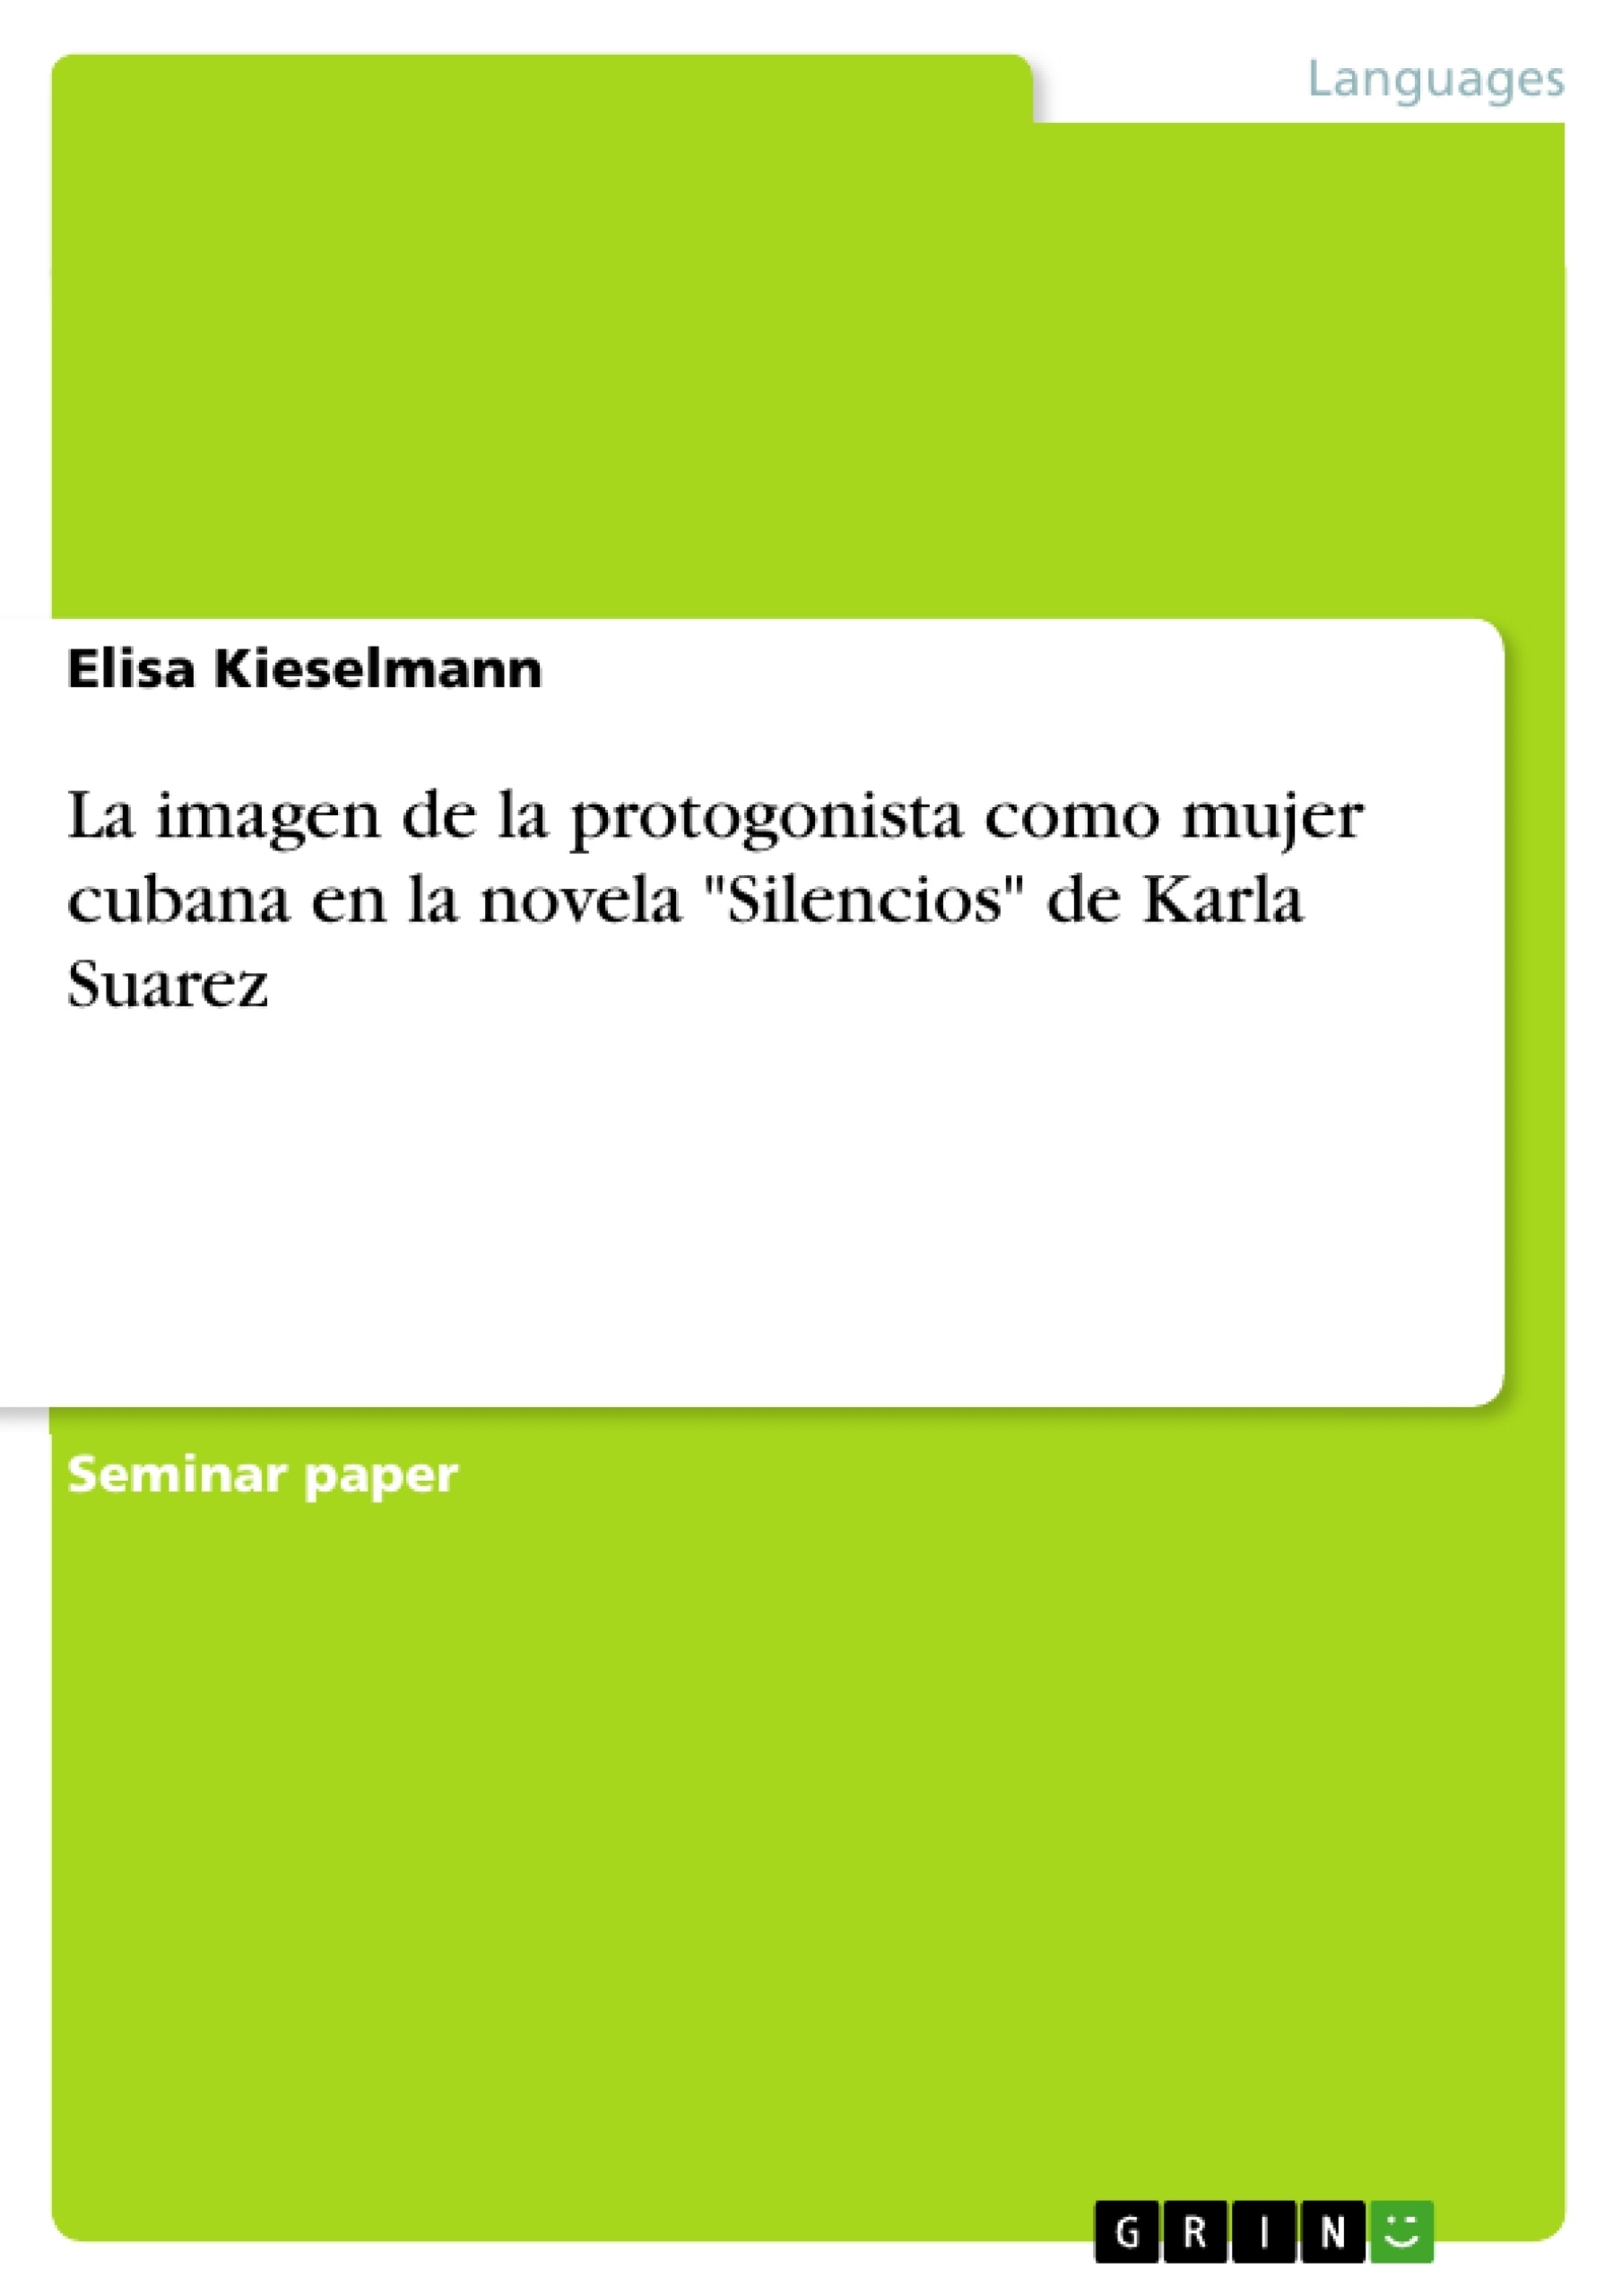 Título: La imagen de la protogonista como mujer cubana en la novela "Silencios" de Karla Suarez